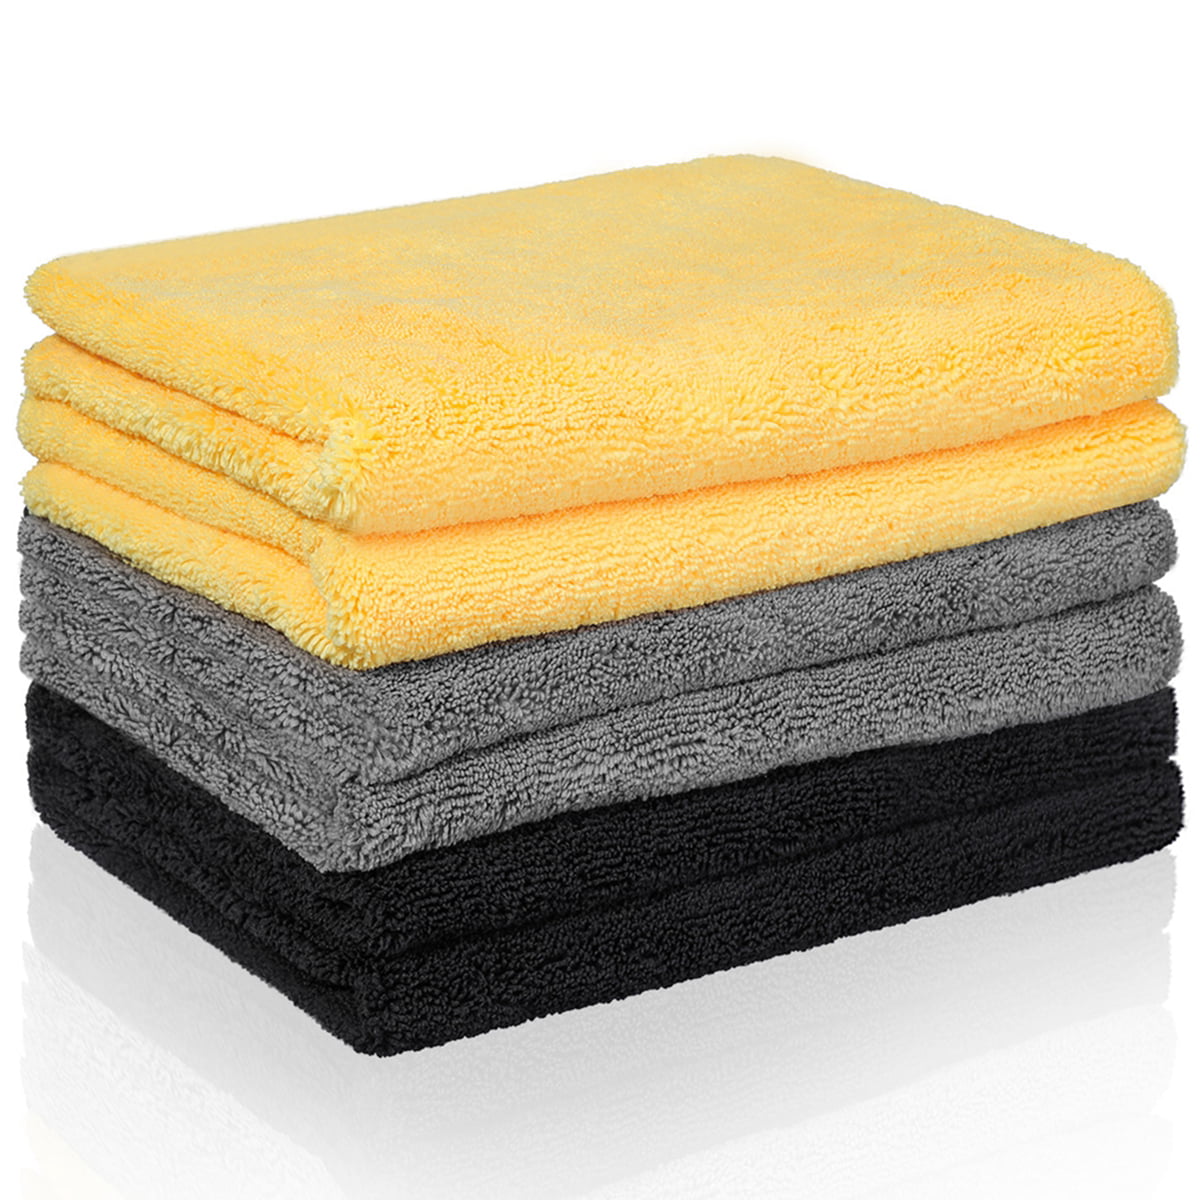 2x Multi-purpose 500GSM Premium Plush Microfiber Towels car Wash Drying Cleaning 